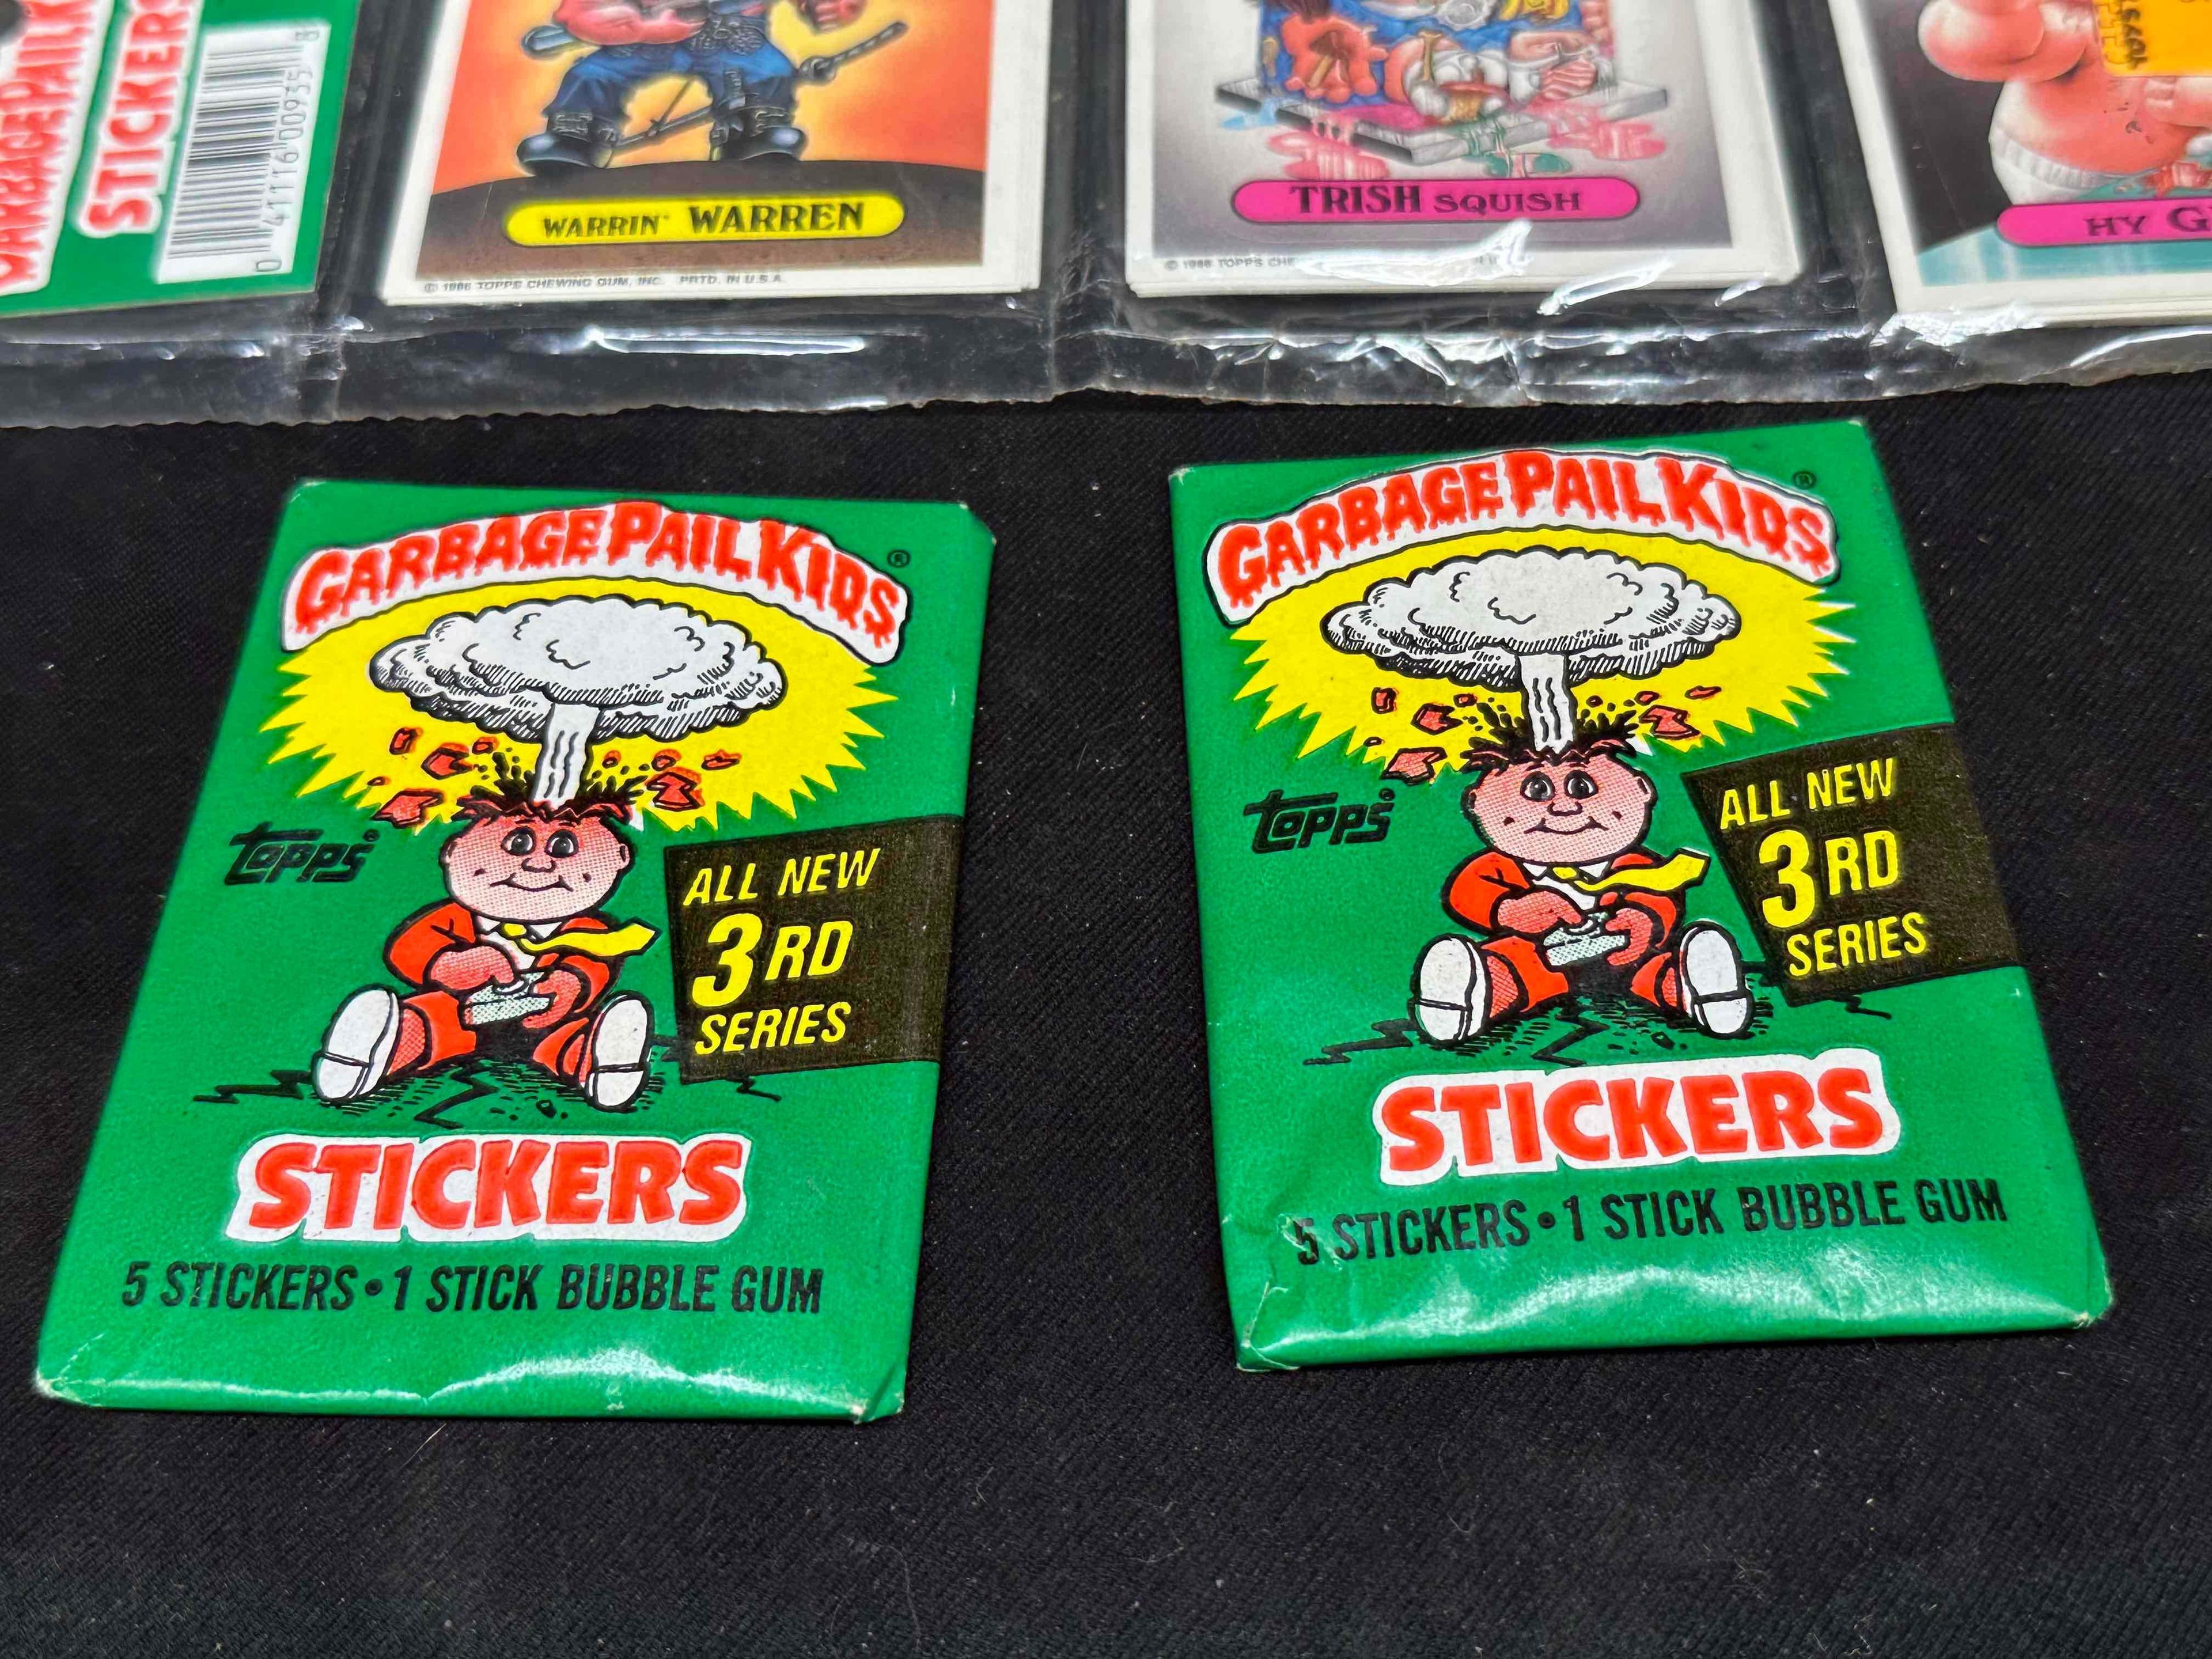 Vintage 1986 Garbage Pail Kids Stickers Series 3 Packs Unopened